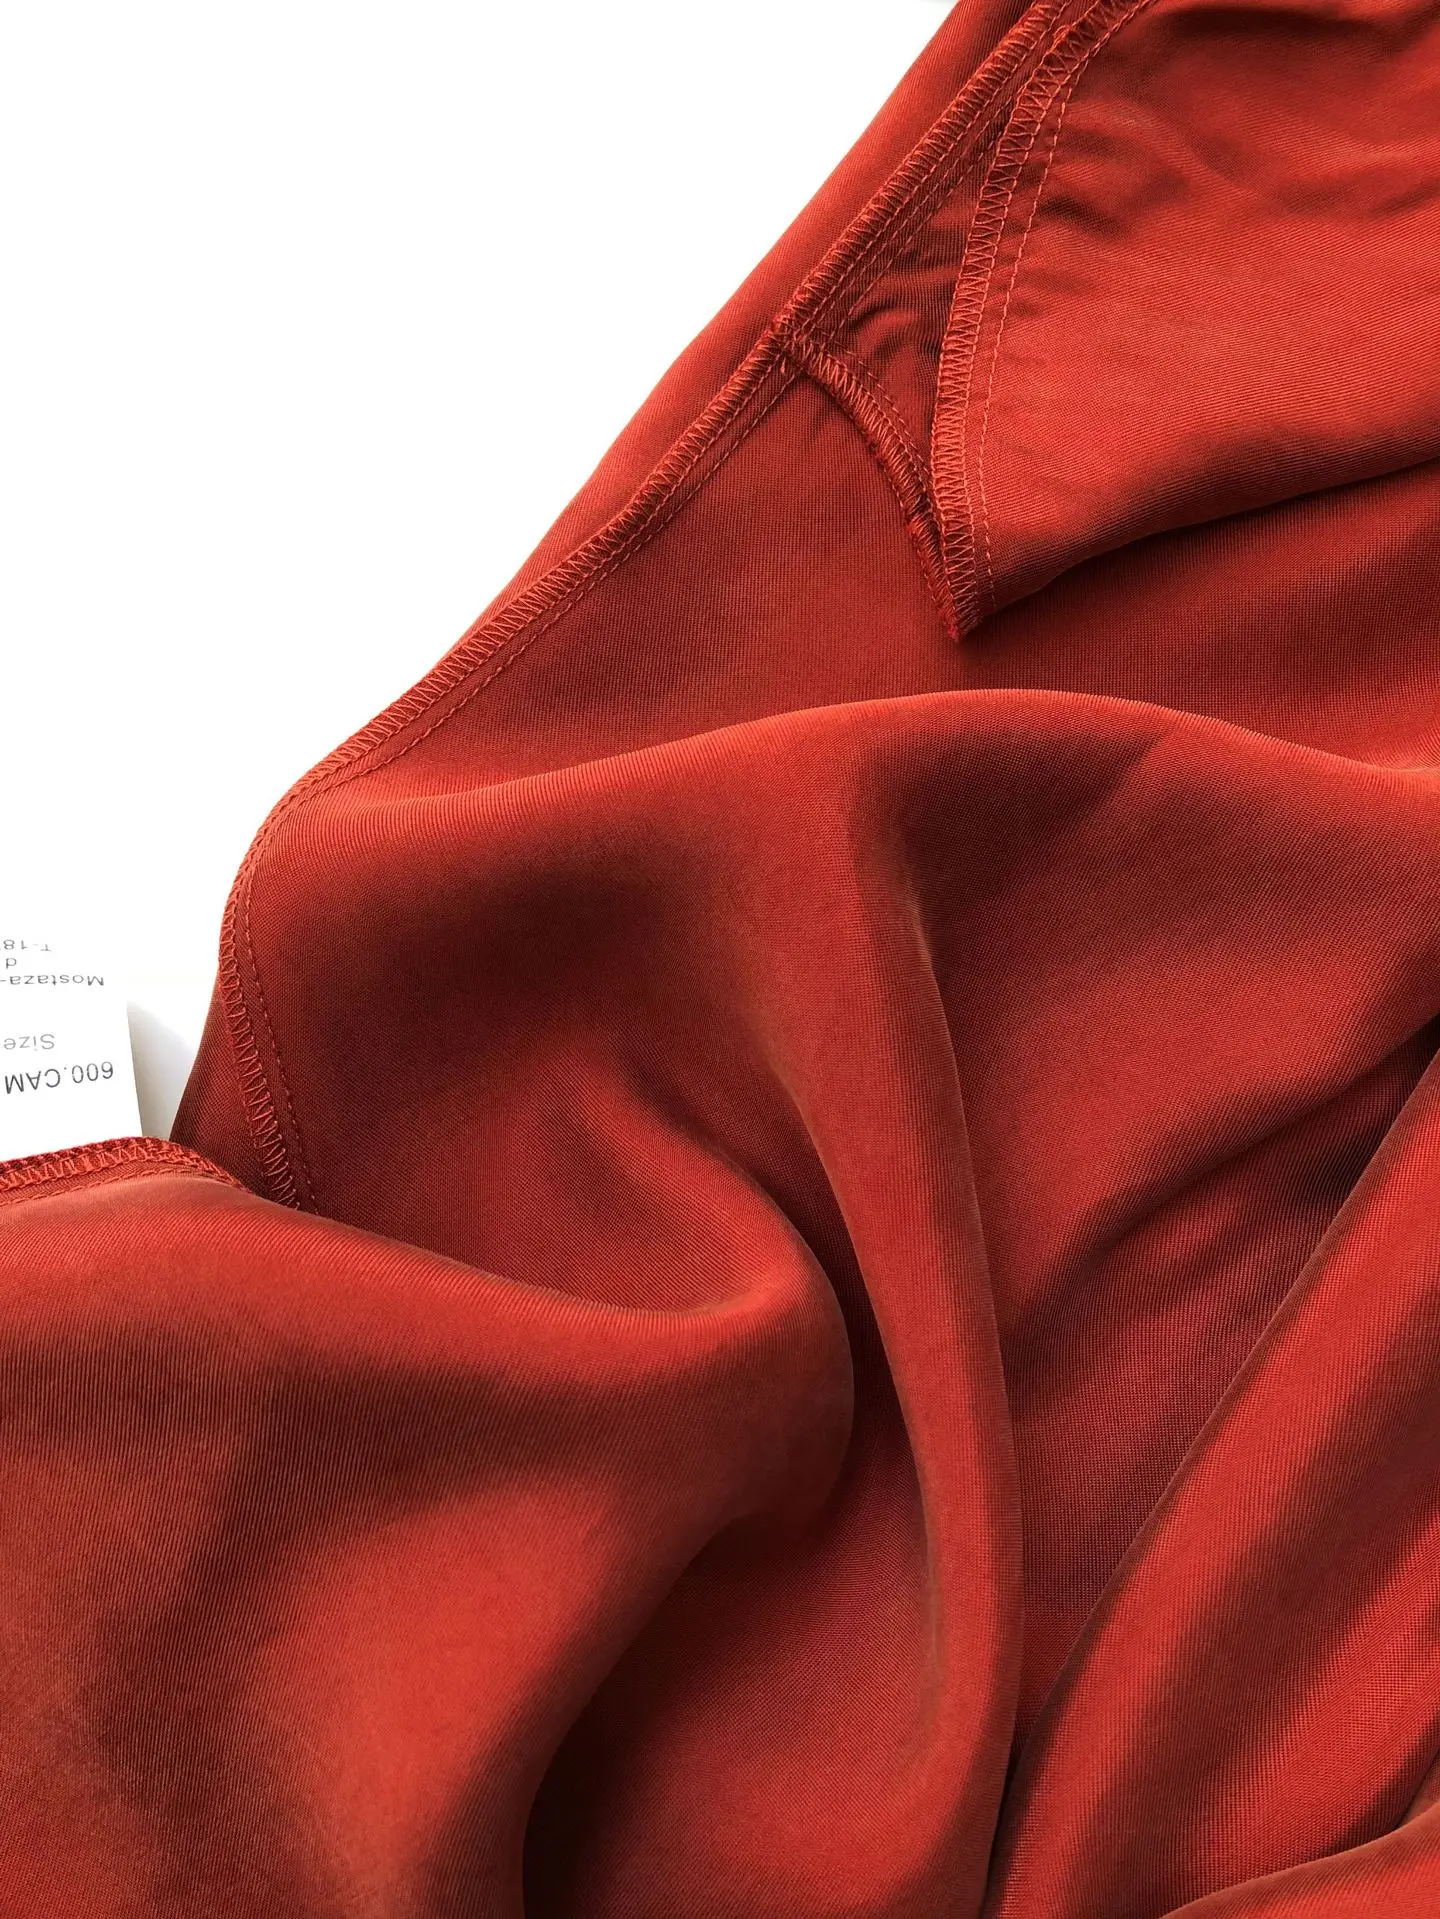 Медная Аммиачная короткая юбка Ранняя весна Трехцветная текстура тонкая и драпированная юбка с эластичным поясом